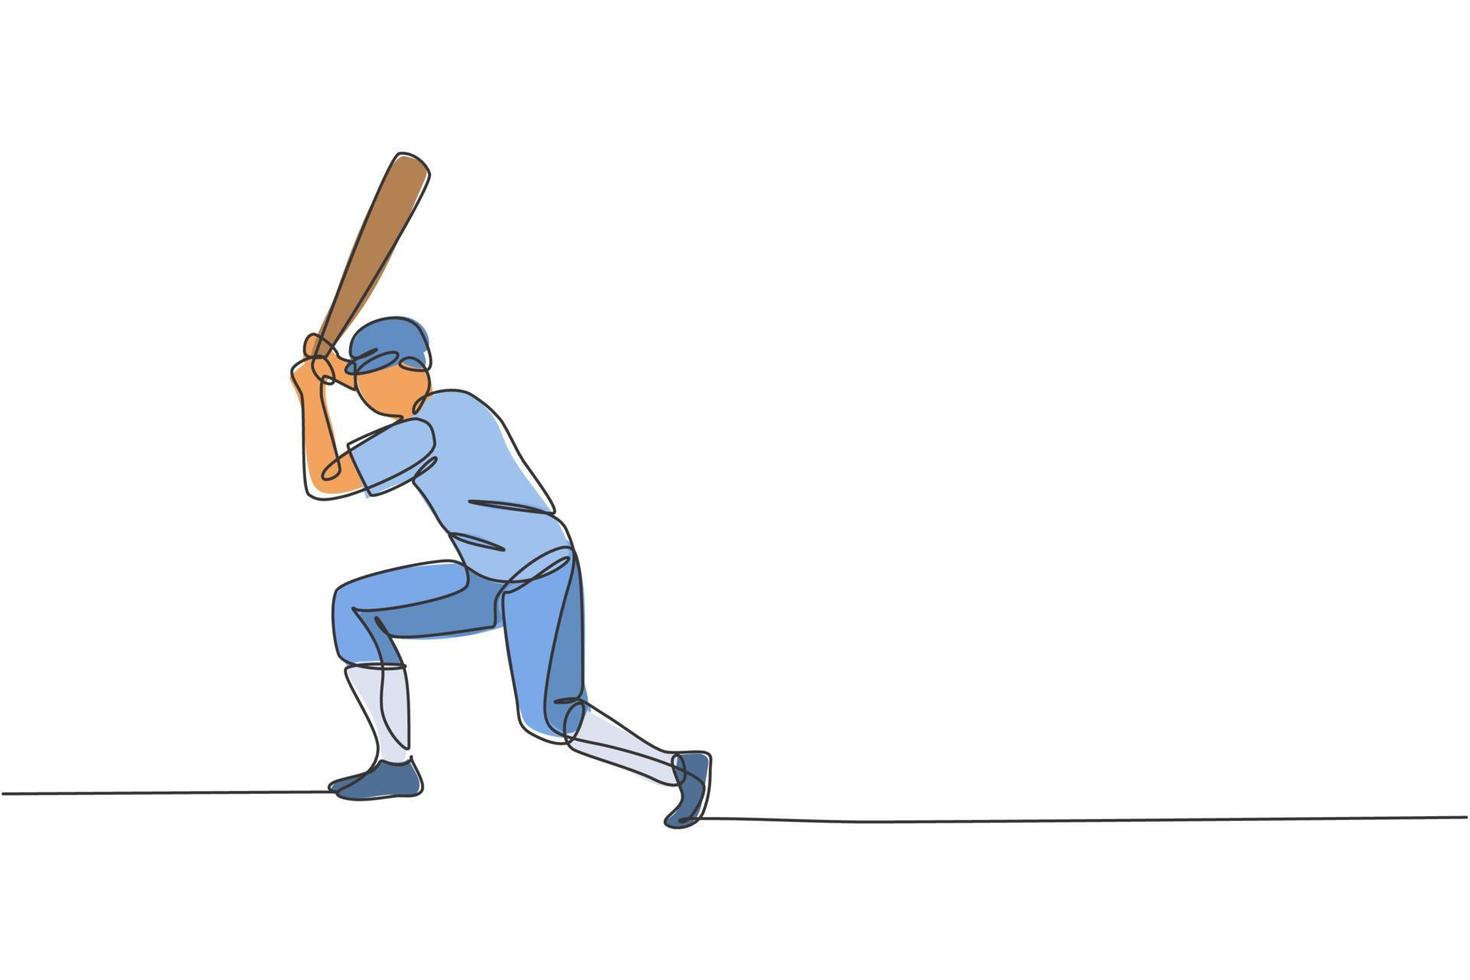 en kontinuerlig linjeritning av ung sportig man baseballspelare praxis att slå bollen på domstolen. tävlingsidrottskoncept. dynamisk enda rad rita design vektor illustration för marknadsföring affisch